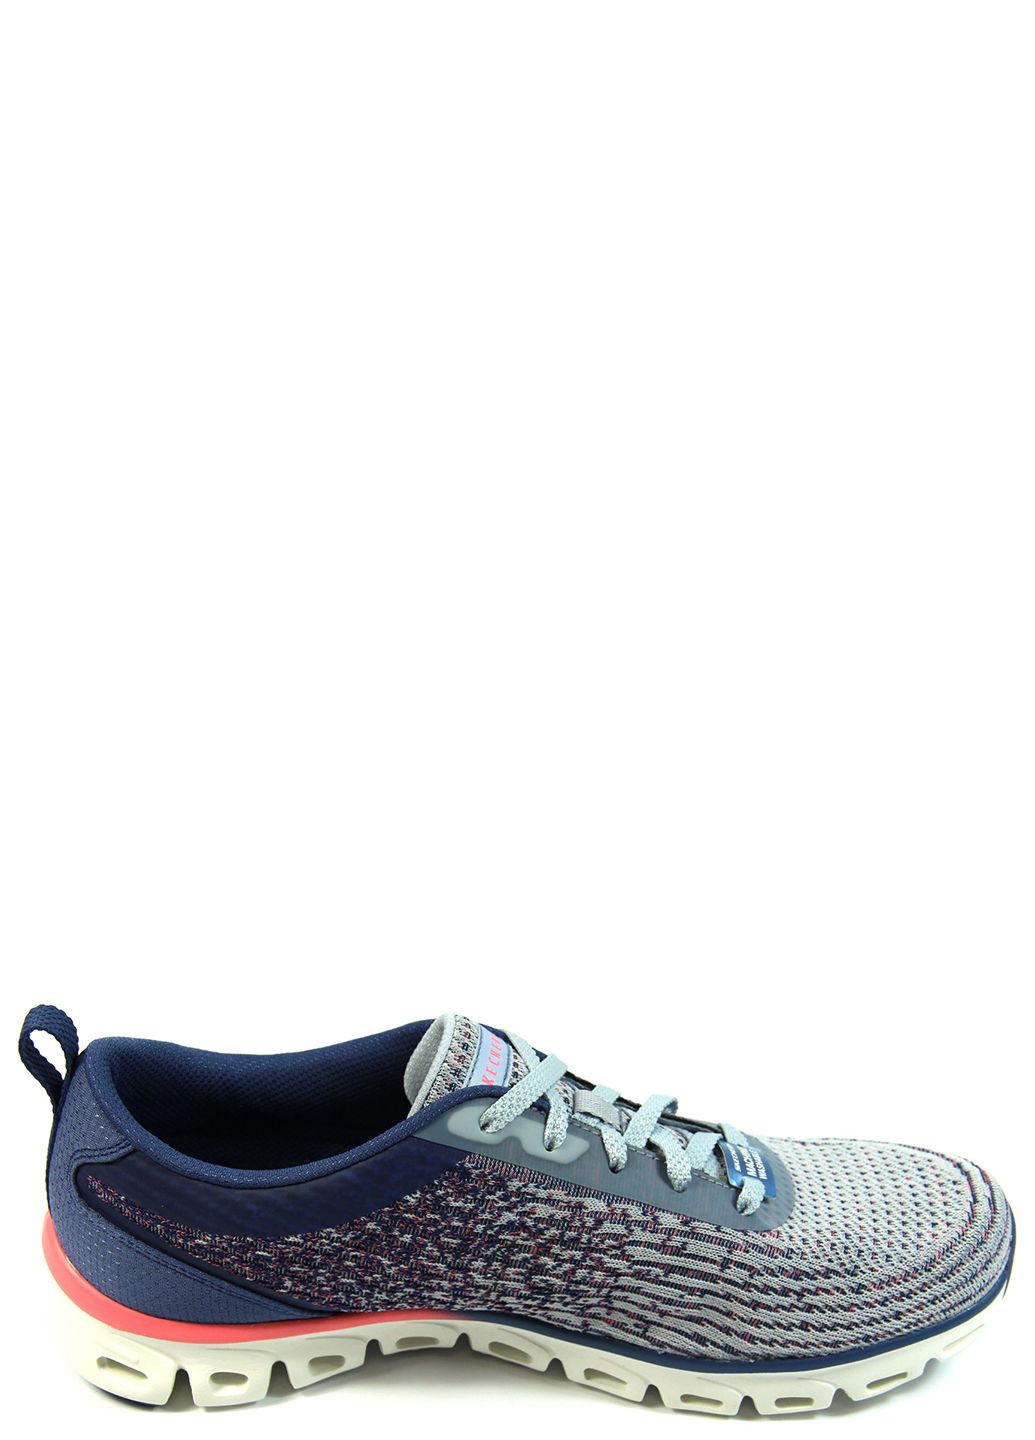 Цветные демисезонные женские кроссовки glide step 104325 Skechers